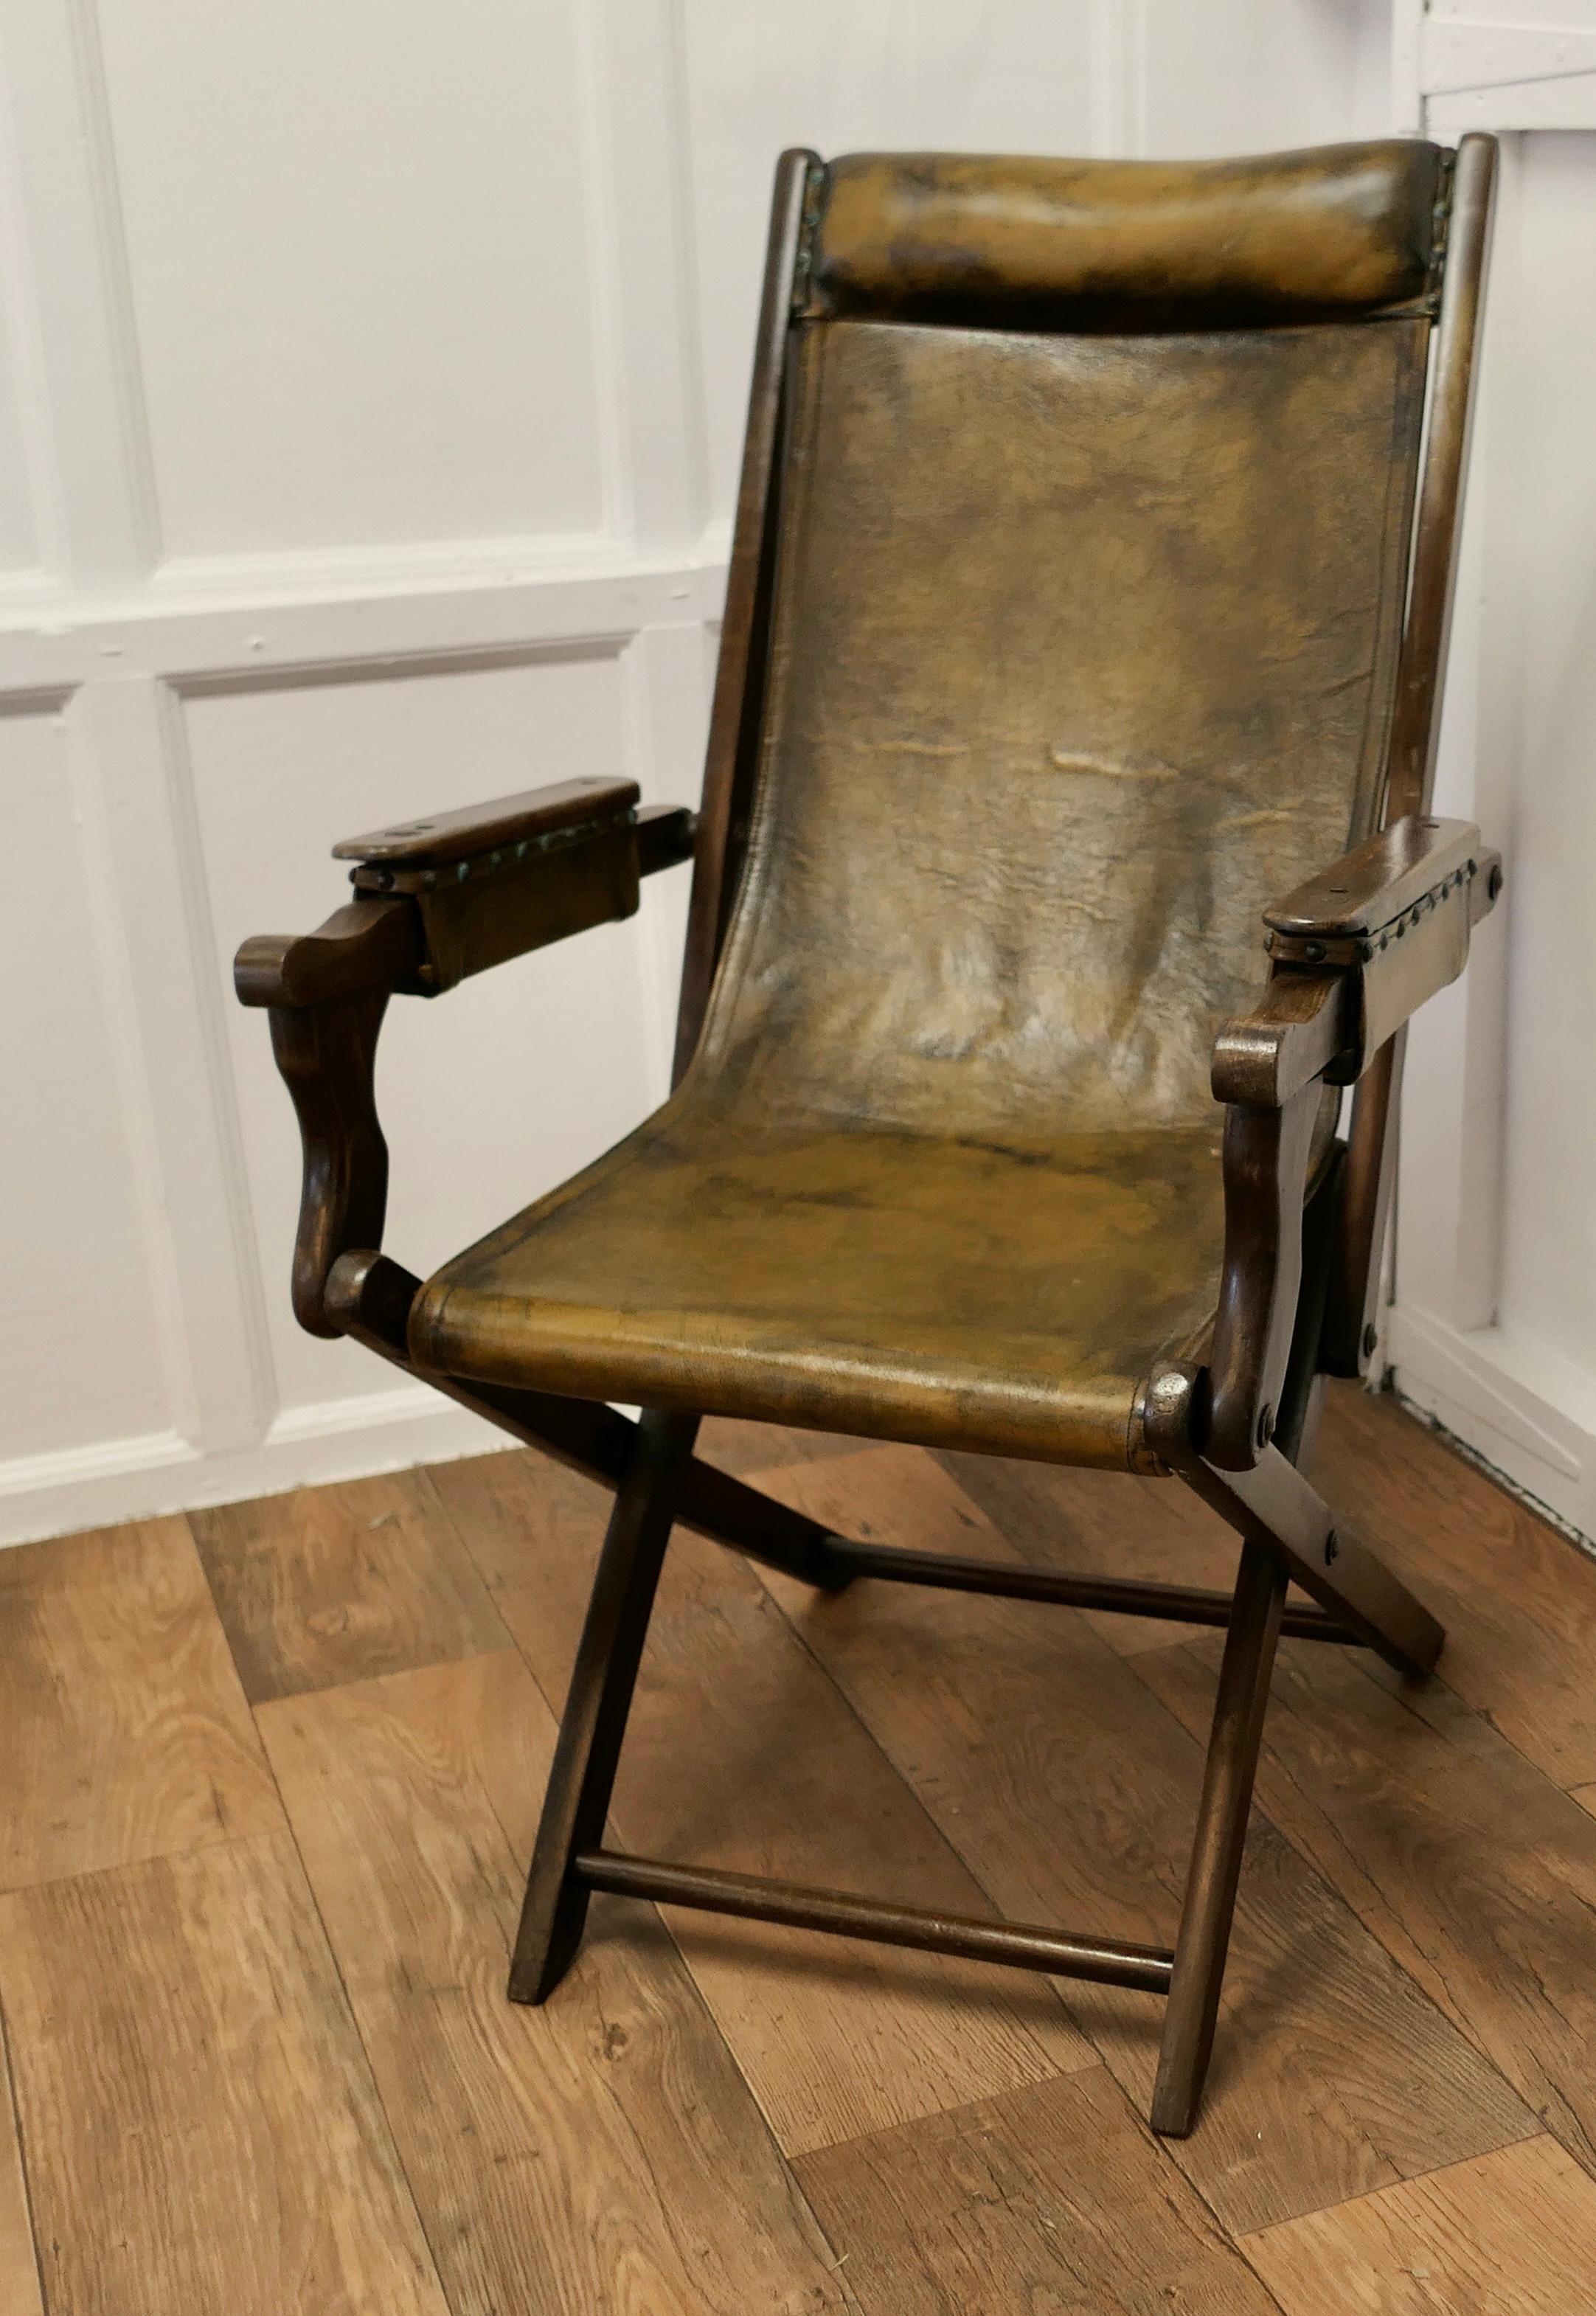 Chaise à vapeur Edwardienne, Chaise de pont pliante en cuir


Chaise à vapeur ou chaise de campagne pliante de l'époque édouardienne, la chaise est fabriquée en hêtre et est recouverte de cuir vert Oliver. 
Datant d'environ 1900, le cadre pliant